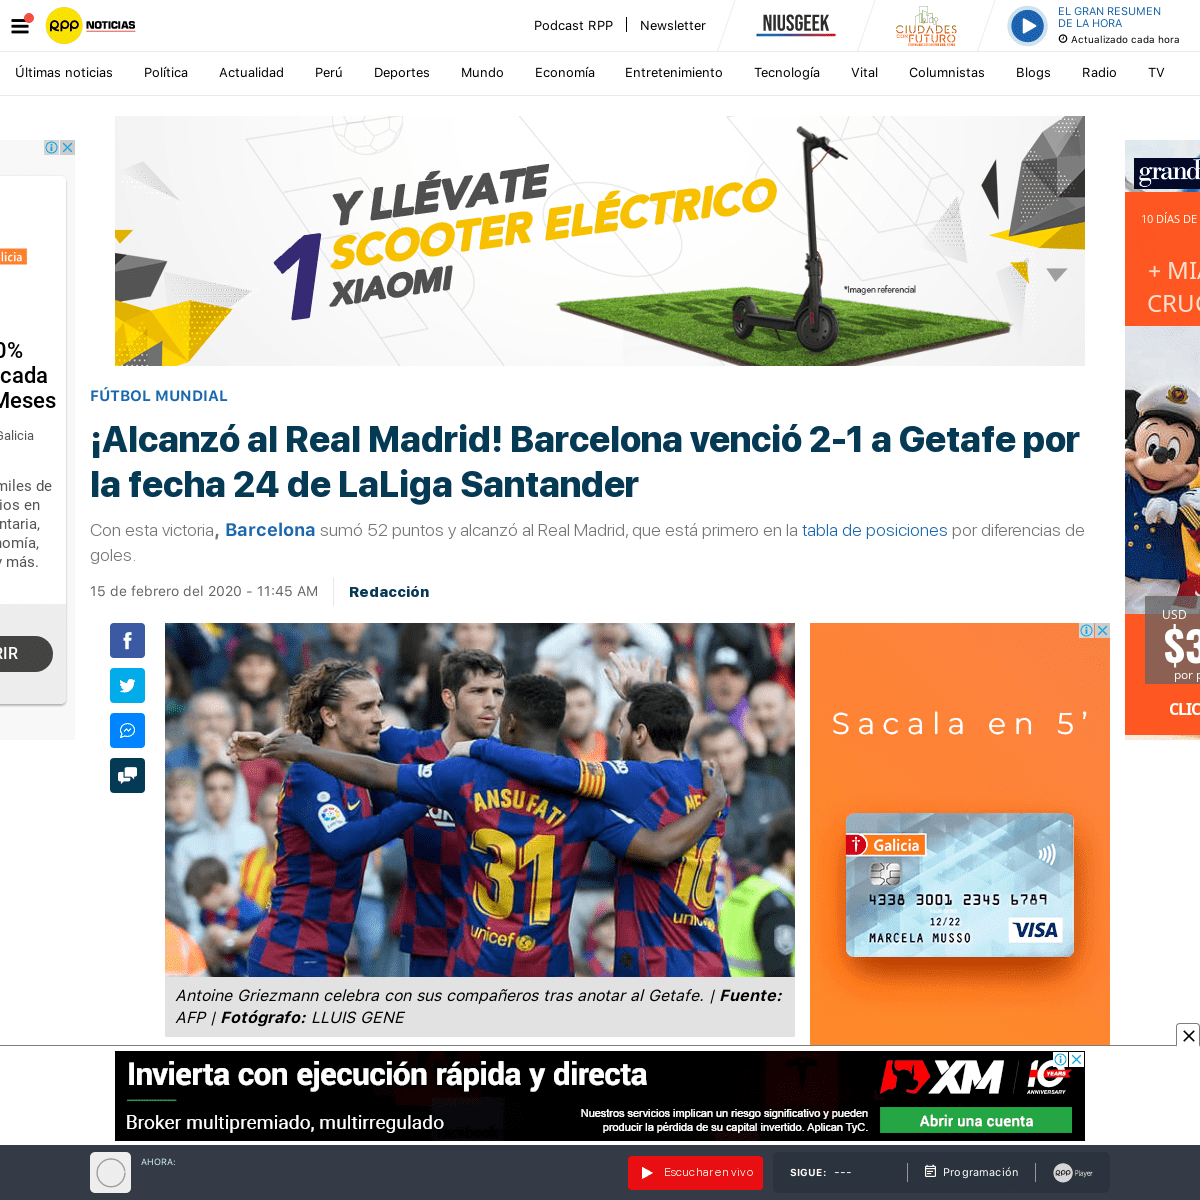 A complete backup of rpp.pe/futbol/futbol-mundial/barcelona-vs-getafe-en-vivo-laliga-en-directo-online-por-la-fecha-24-de-la-lig